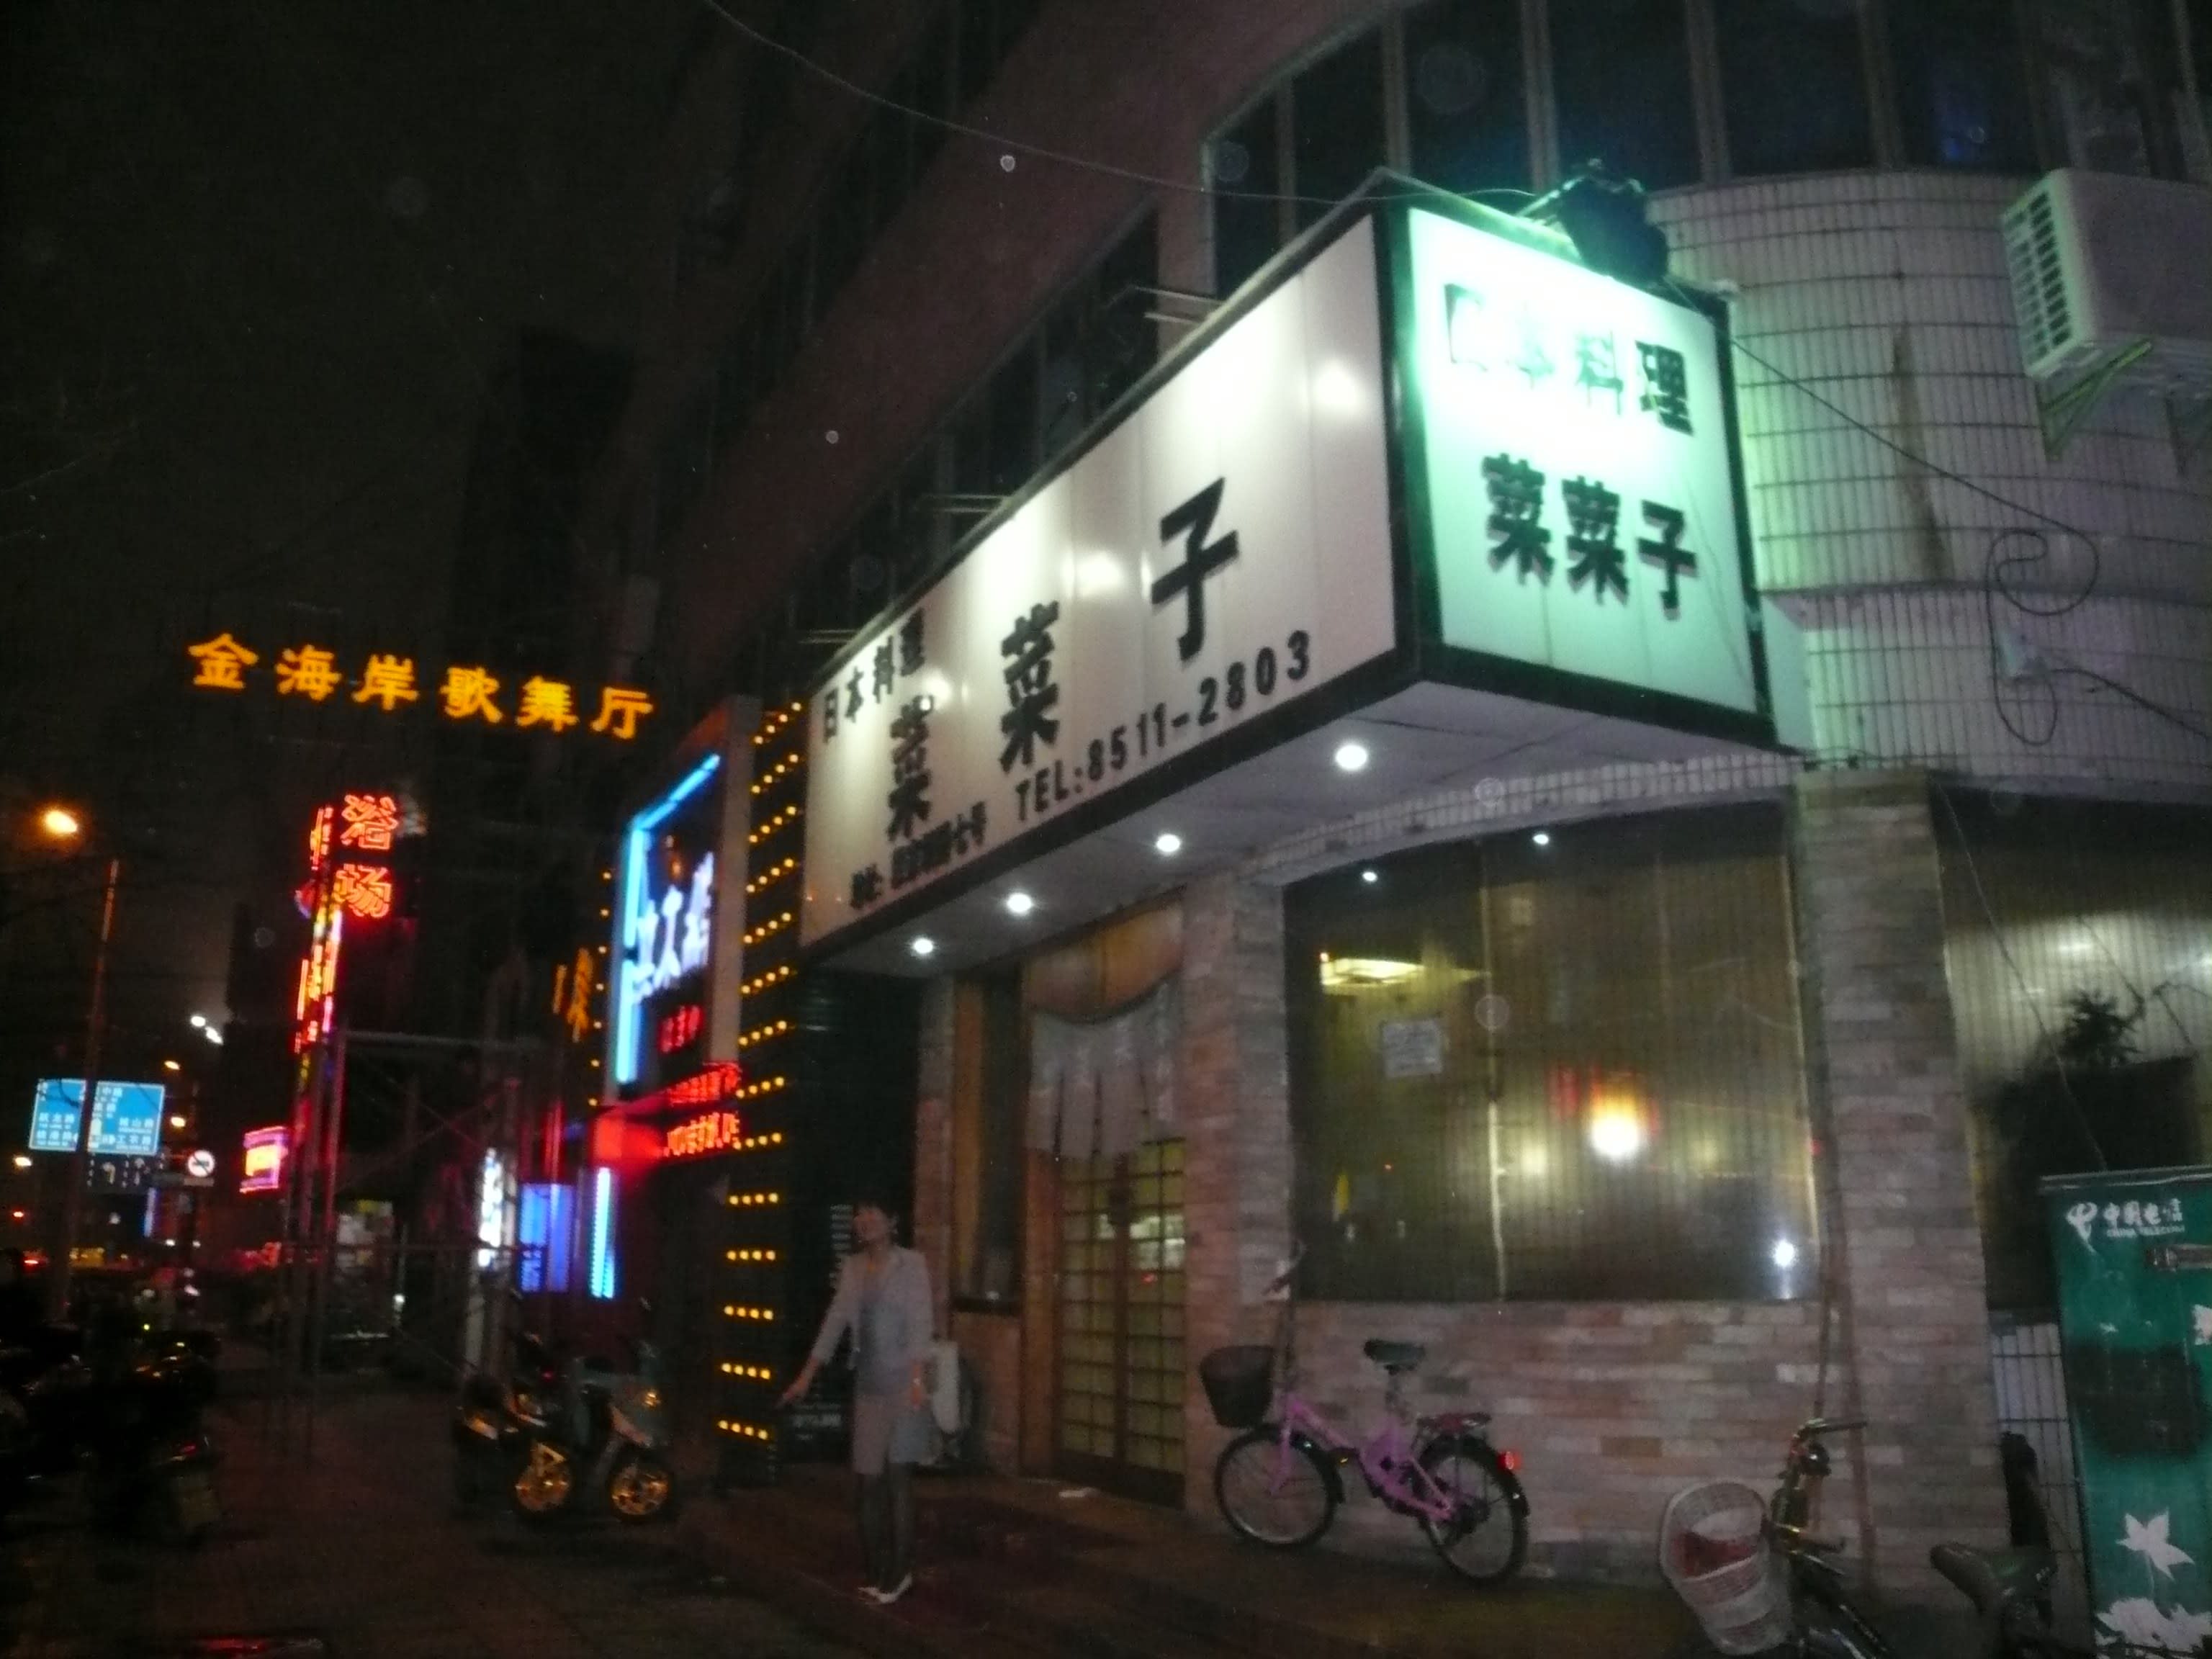 夜の街 中国 上総の写真 クリックすると壁紙サイズの写真 画像 になります